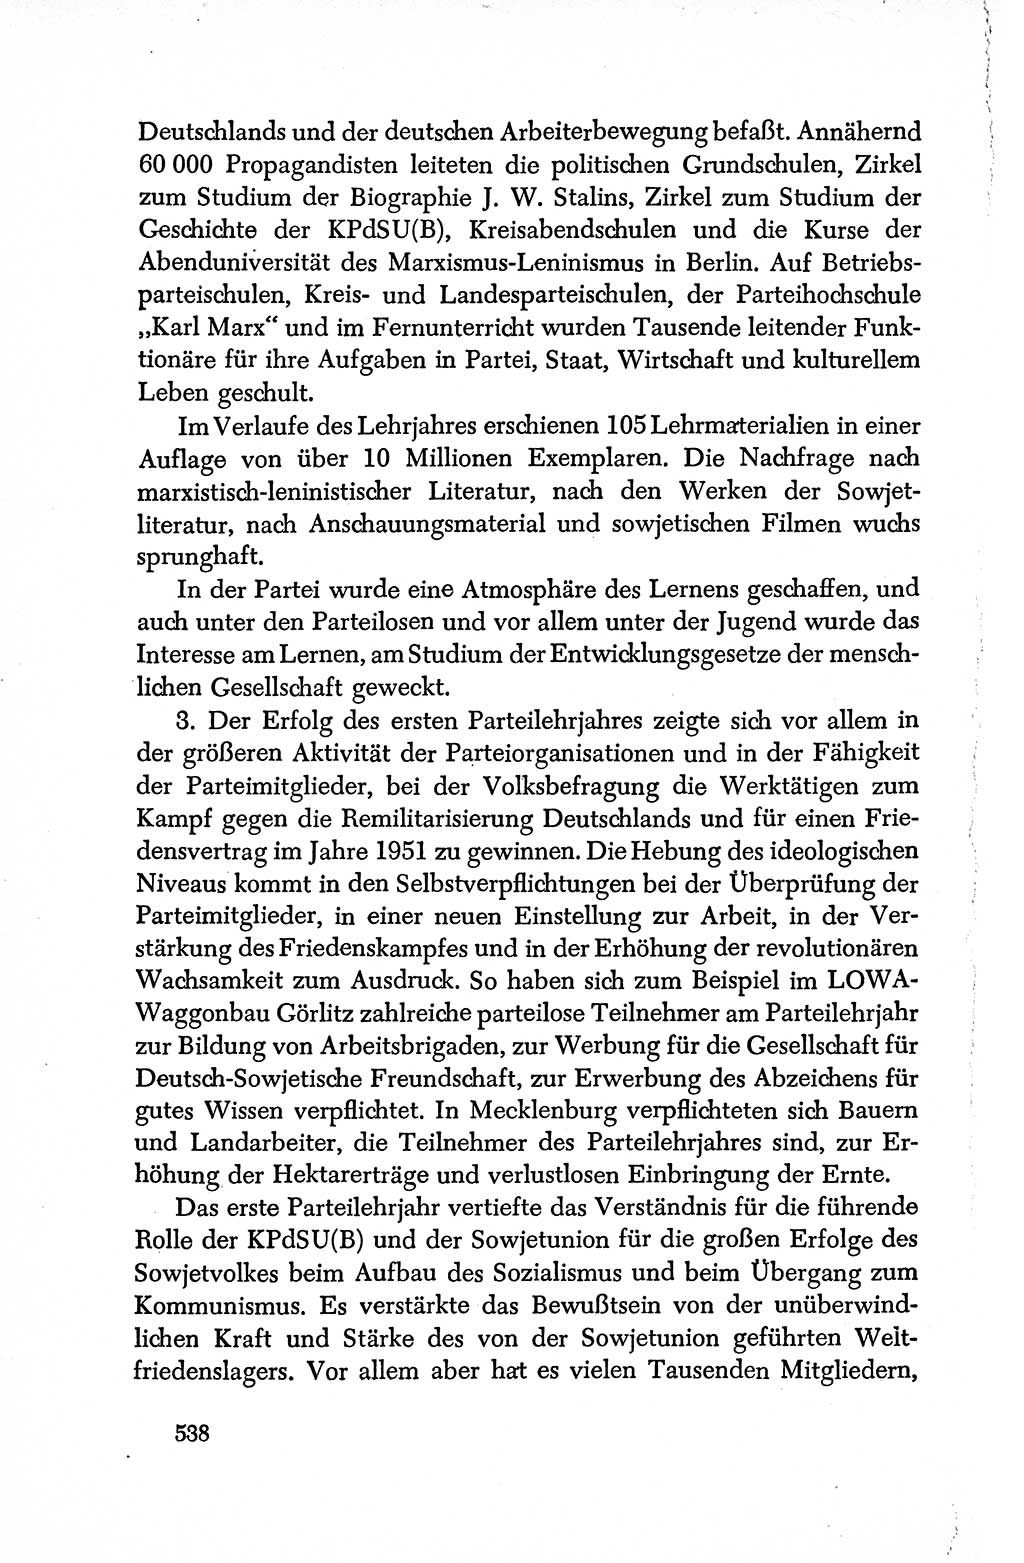 Dokumente der Sozialistischen Einheitspartei Deutschlands (SED) [Deutsche Demokratische Republik (DDR)] 1950-1952, Seite 538 (Dok. SED DDR 1950-1952, S. 538)